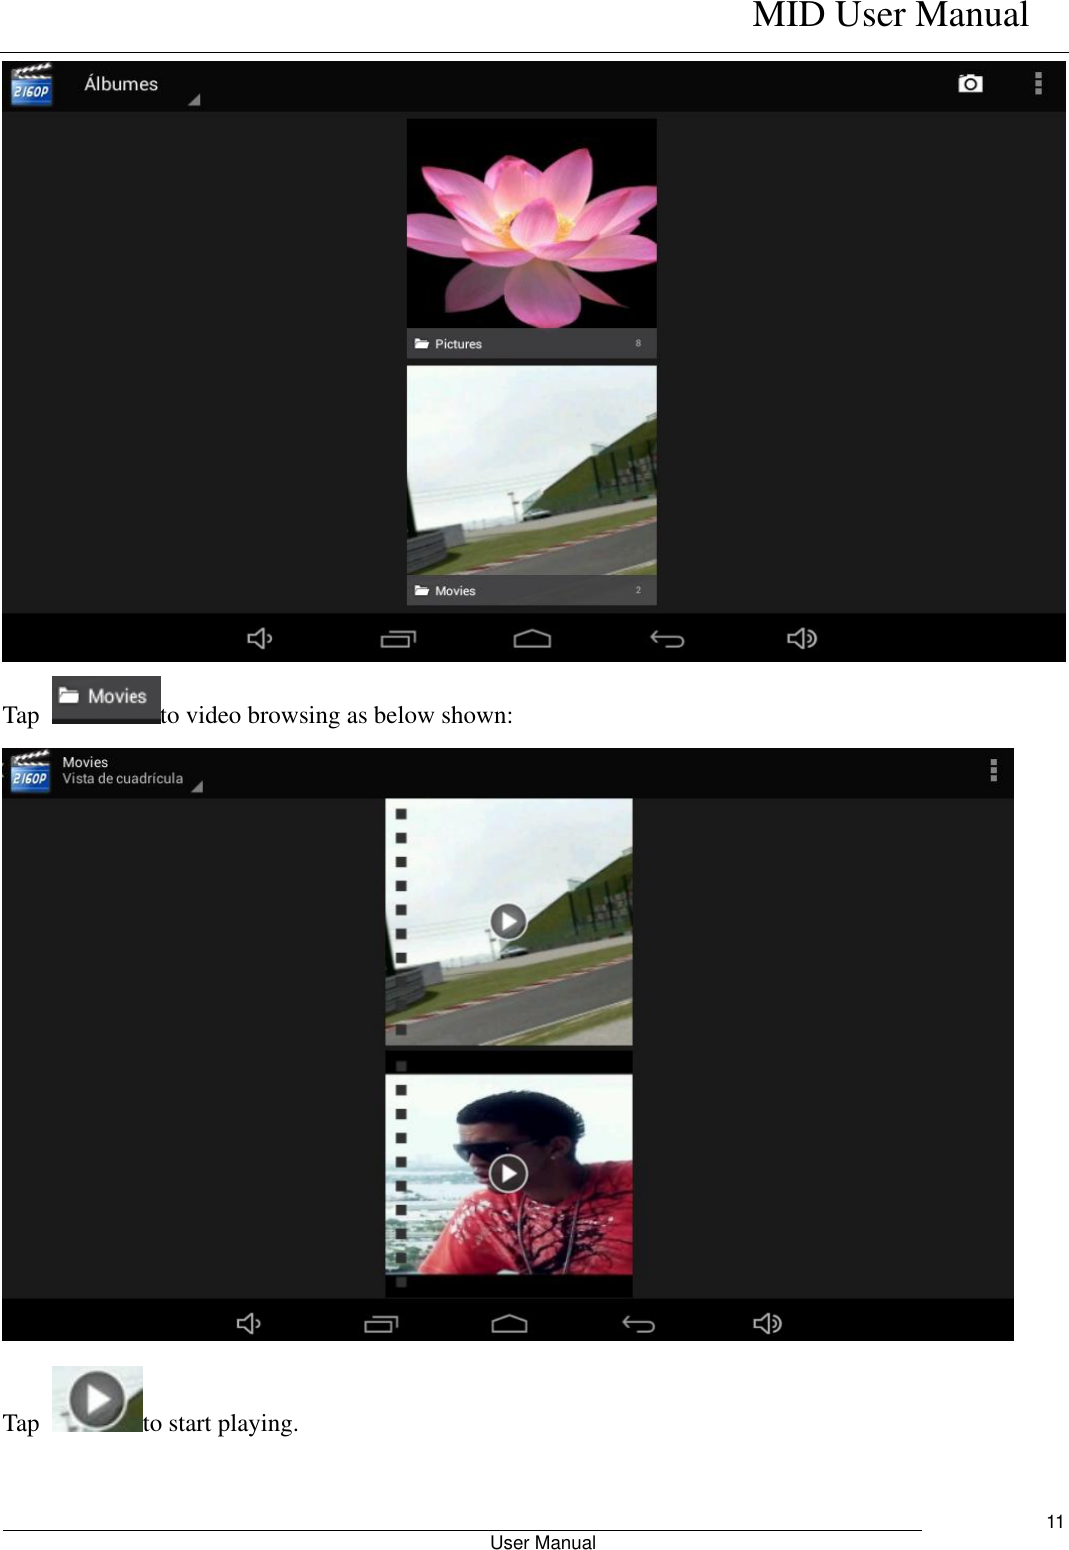    MID User Manual                                                        User Manual     11  Tap  to video browsing as below shown:    Tap  to start playing.  